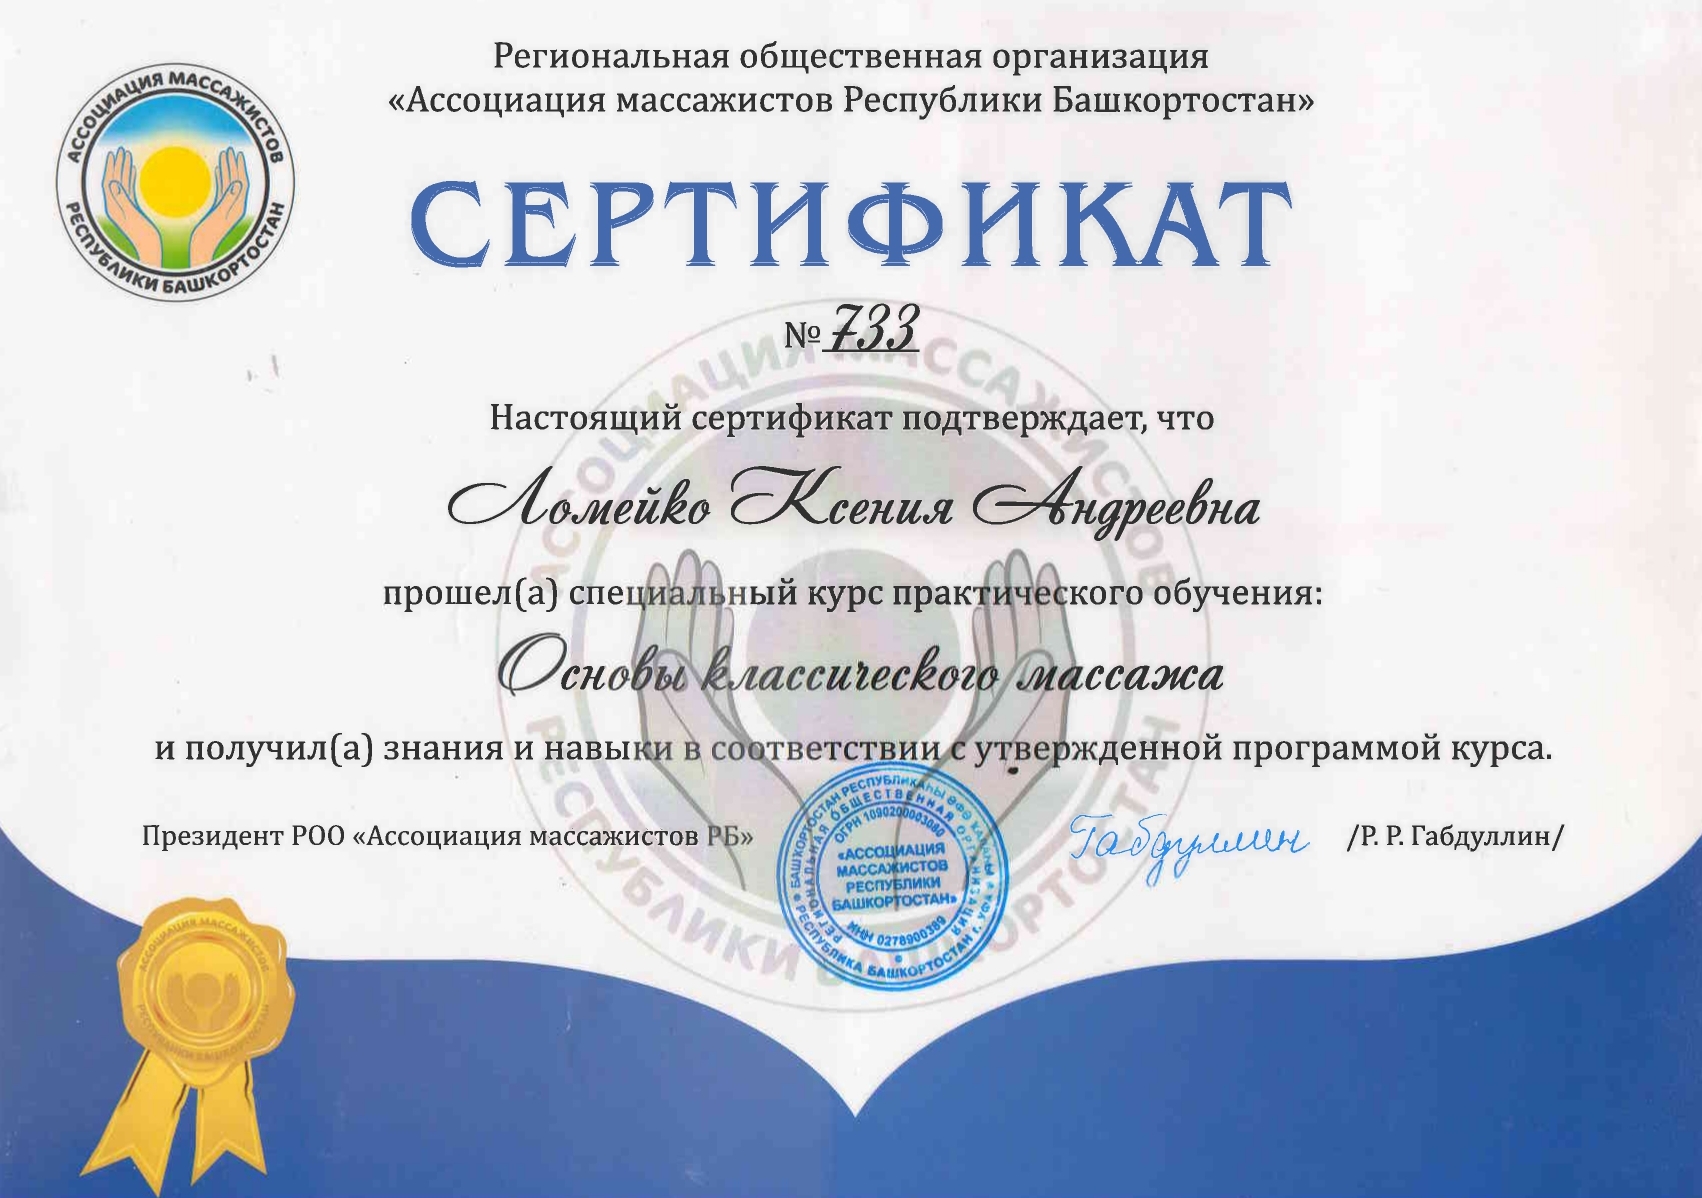 Сертификат специалиста Основы классического массажа Васильева Ксения Андреевна 